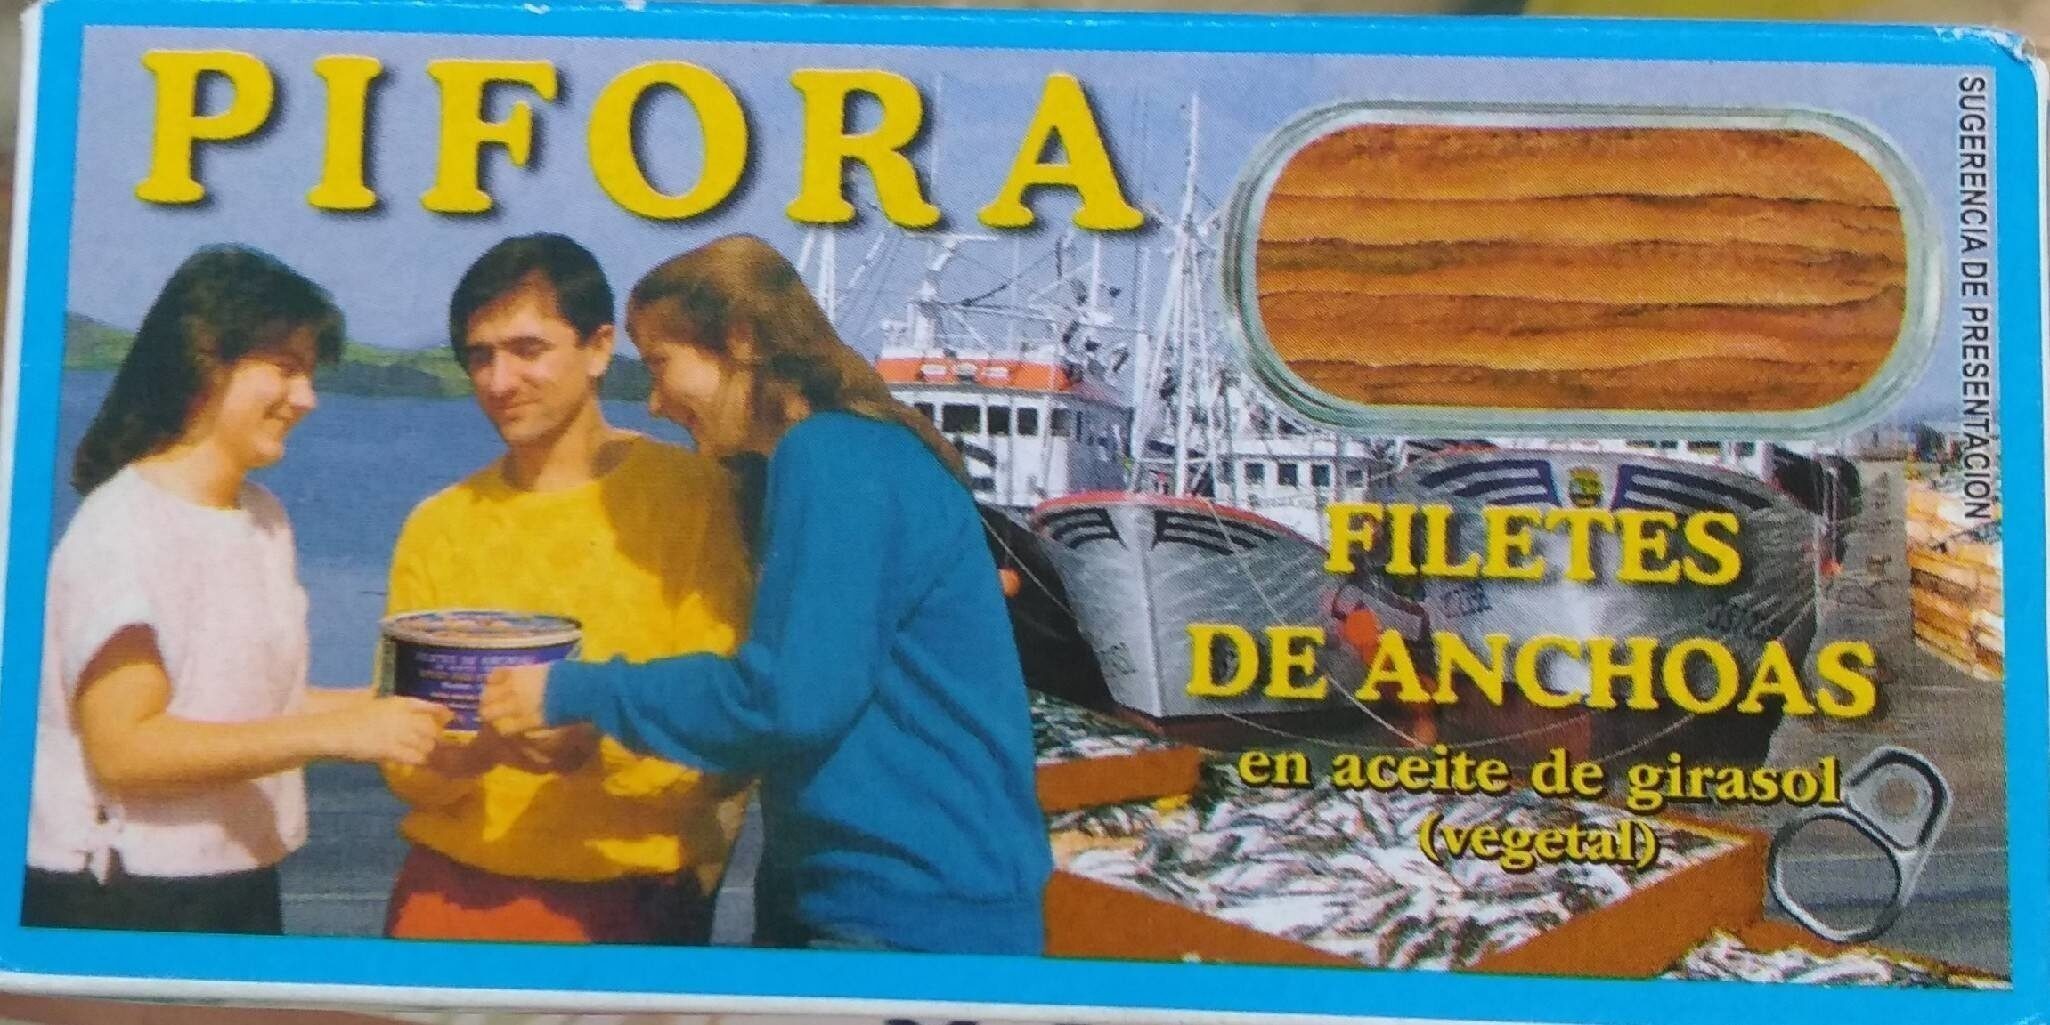 Filetes de anchoa - Producte - es